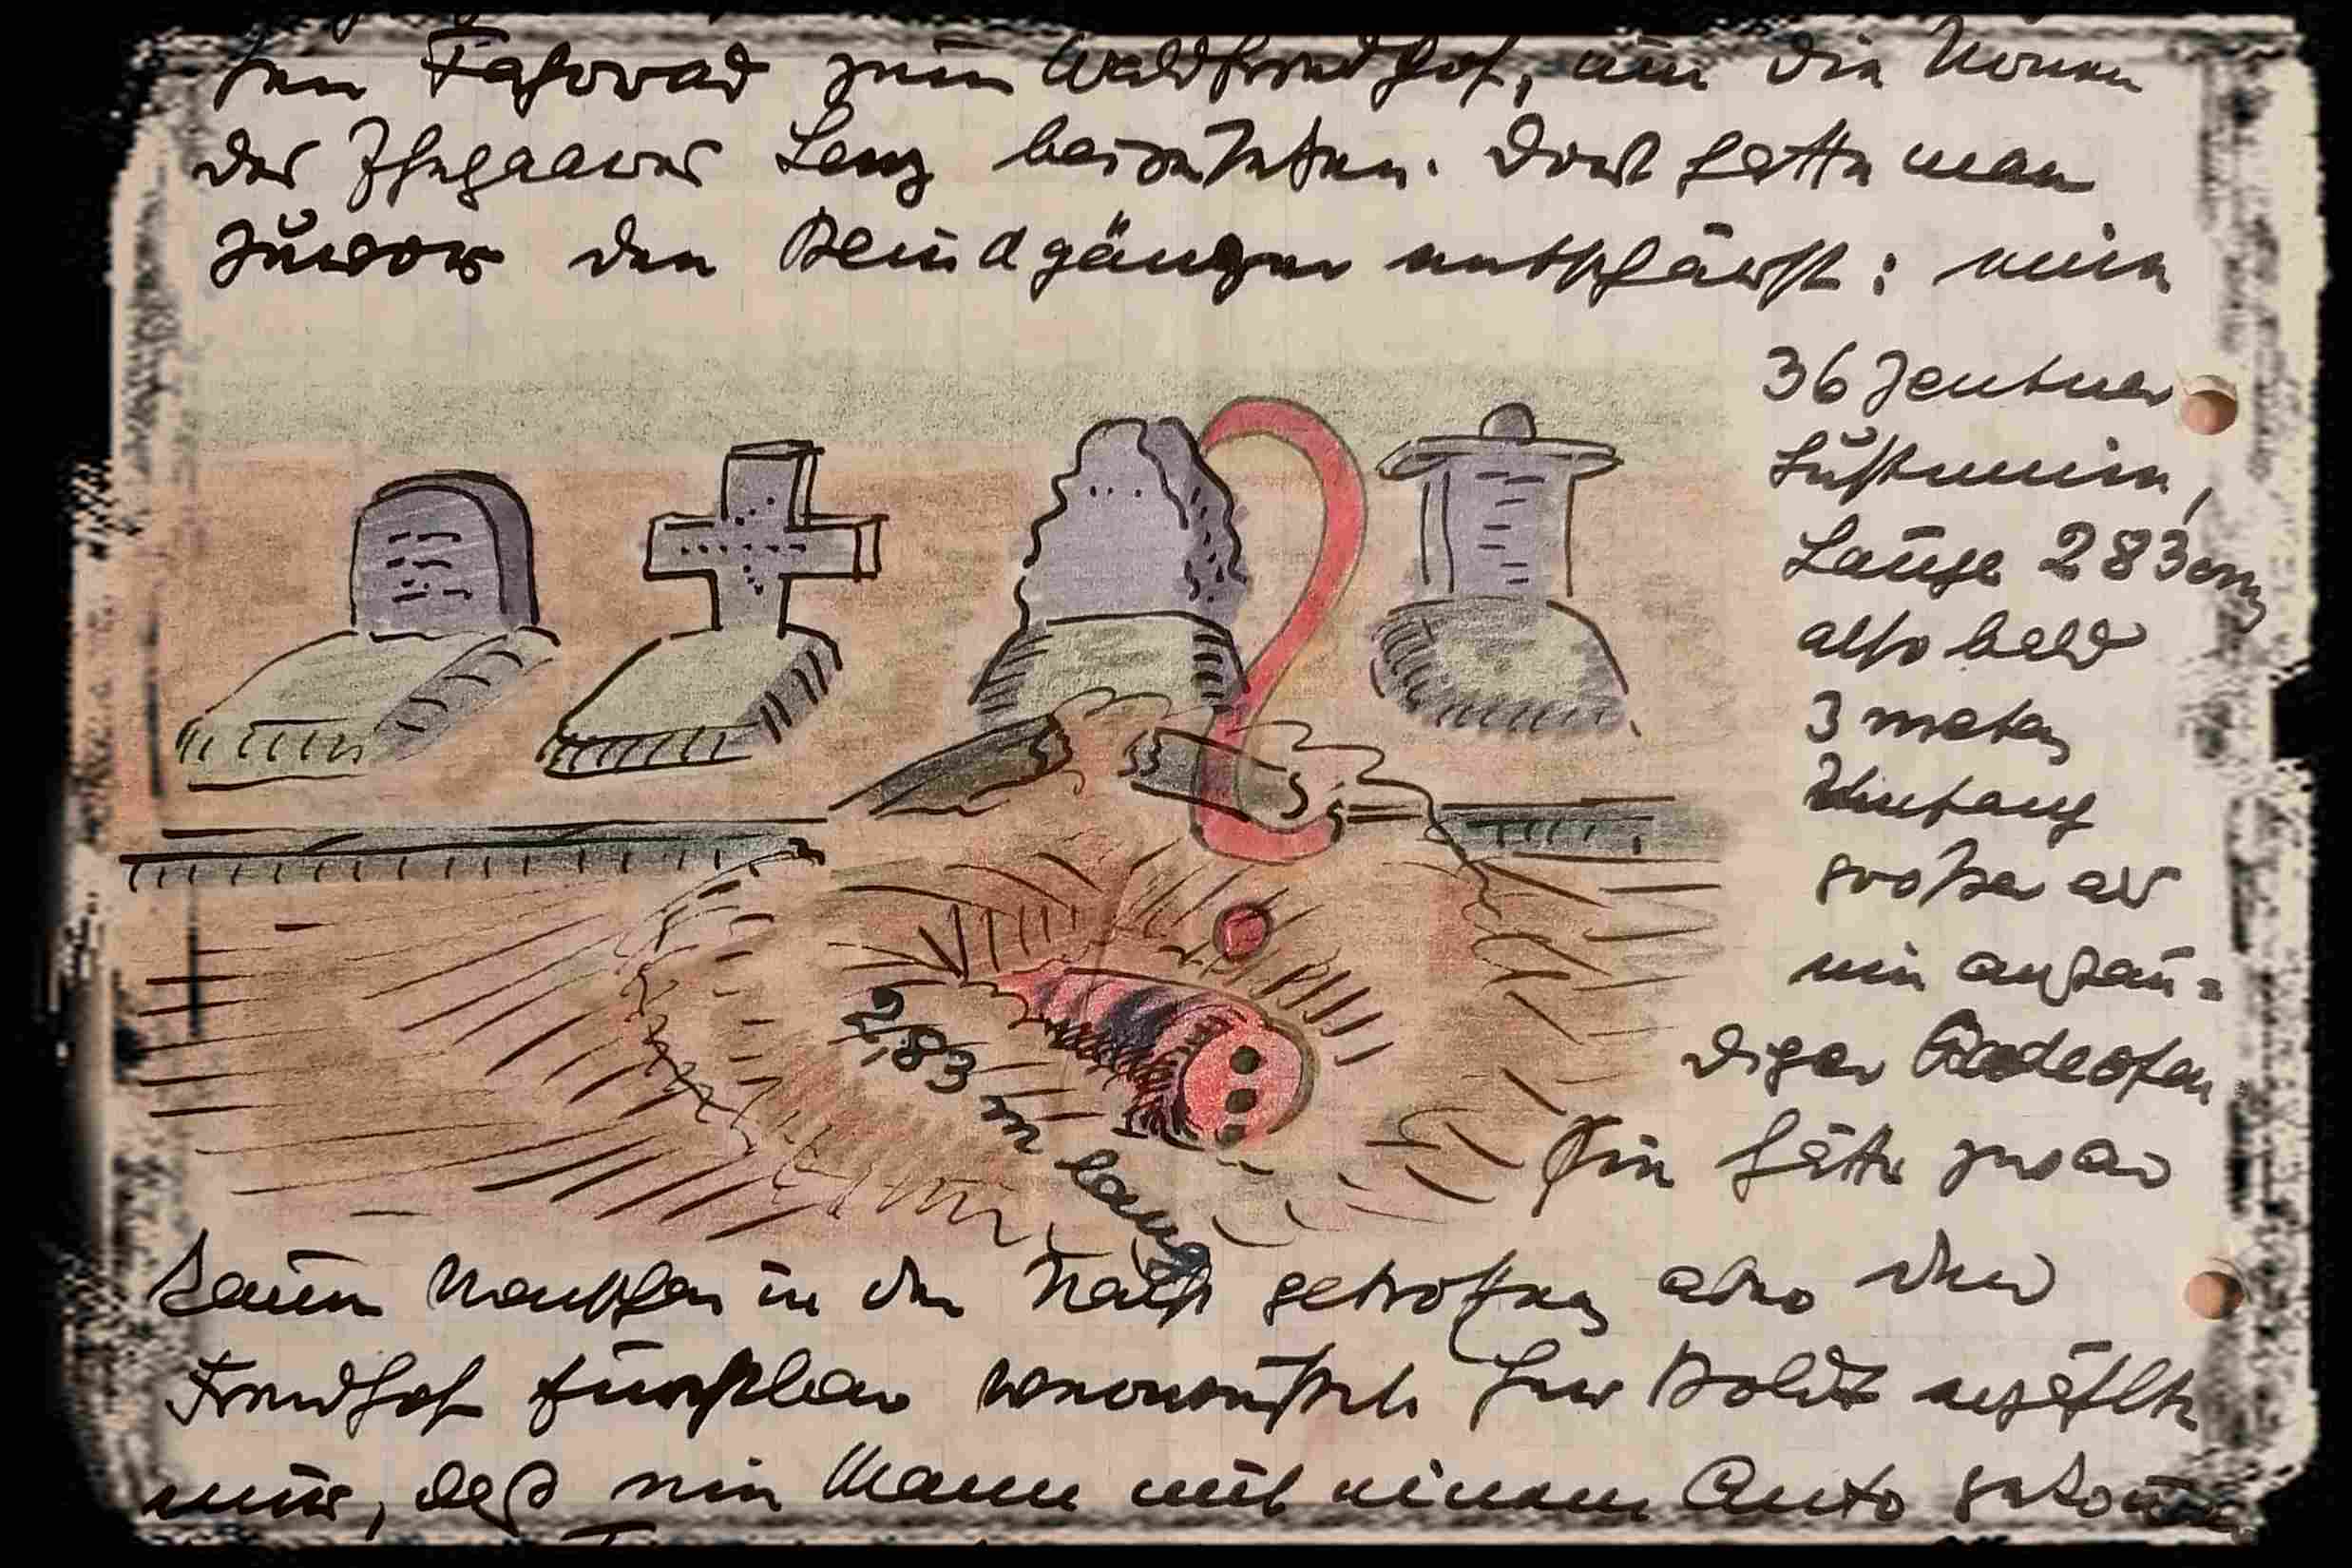 Ausschnitt aus einem Brief. Eine Zeichnung mit mehreren Gräbern, davor ein Bomben-Blindgänger. Um die Zeichnung herum eine schwer lesbare Handschrift.